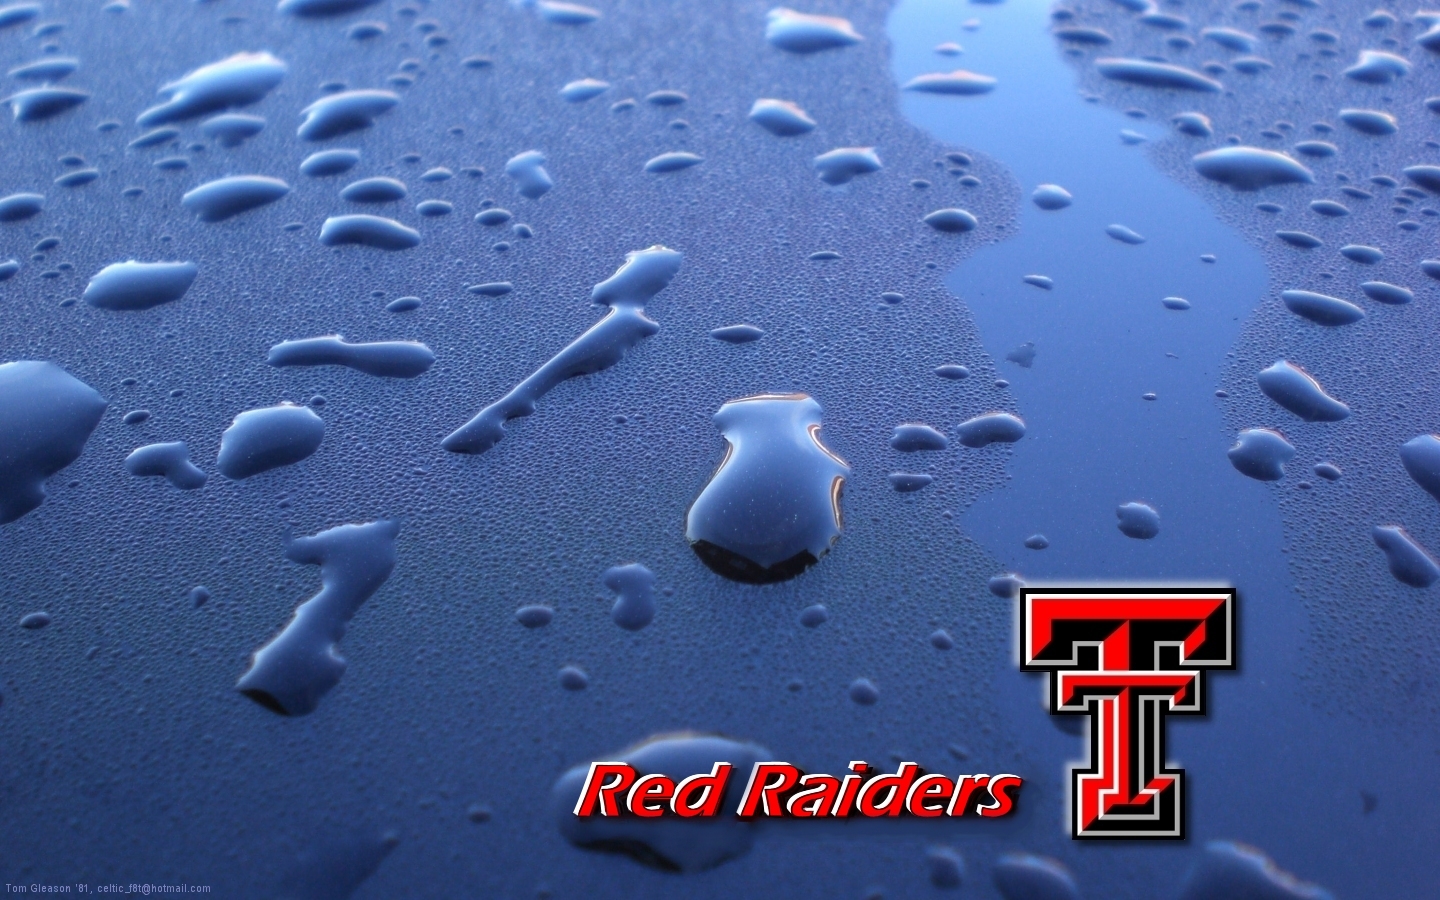 Wallpapers Texas Tech Red Raider Free 1440x900 #texas